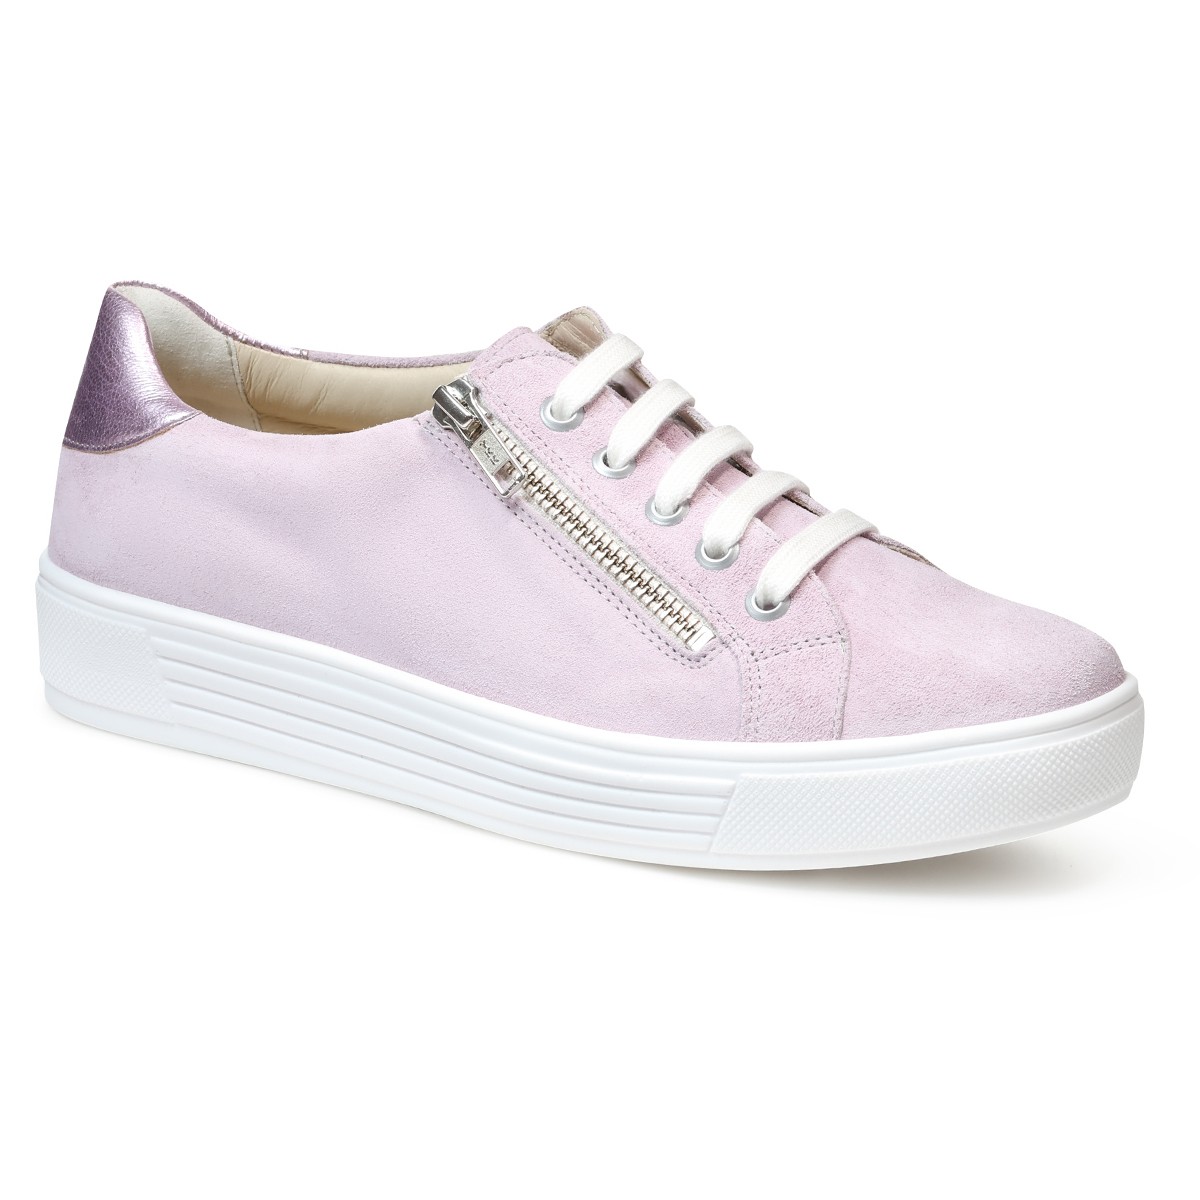 спортивные туфли на шнуровке kaja solidus цвет verona verona flecht jade Кеды женские Kaja, Solidus, розовая лаванда